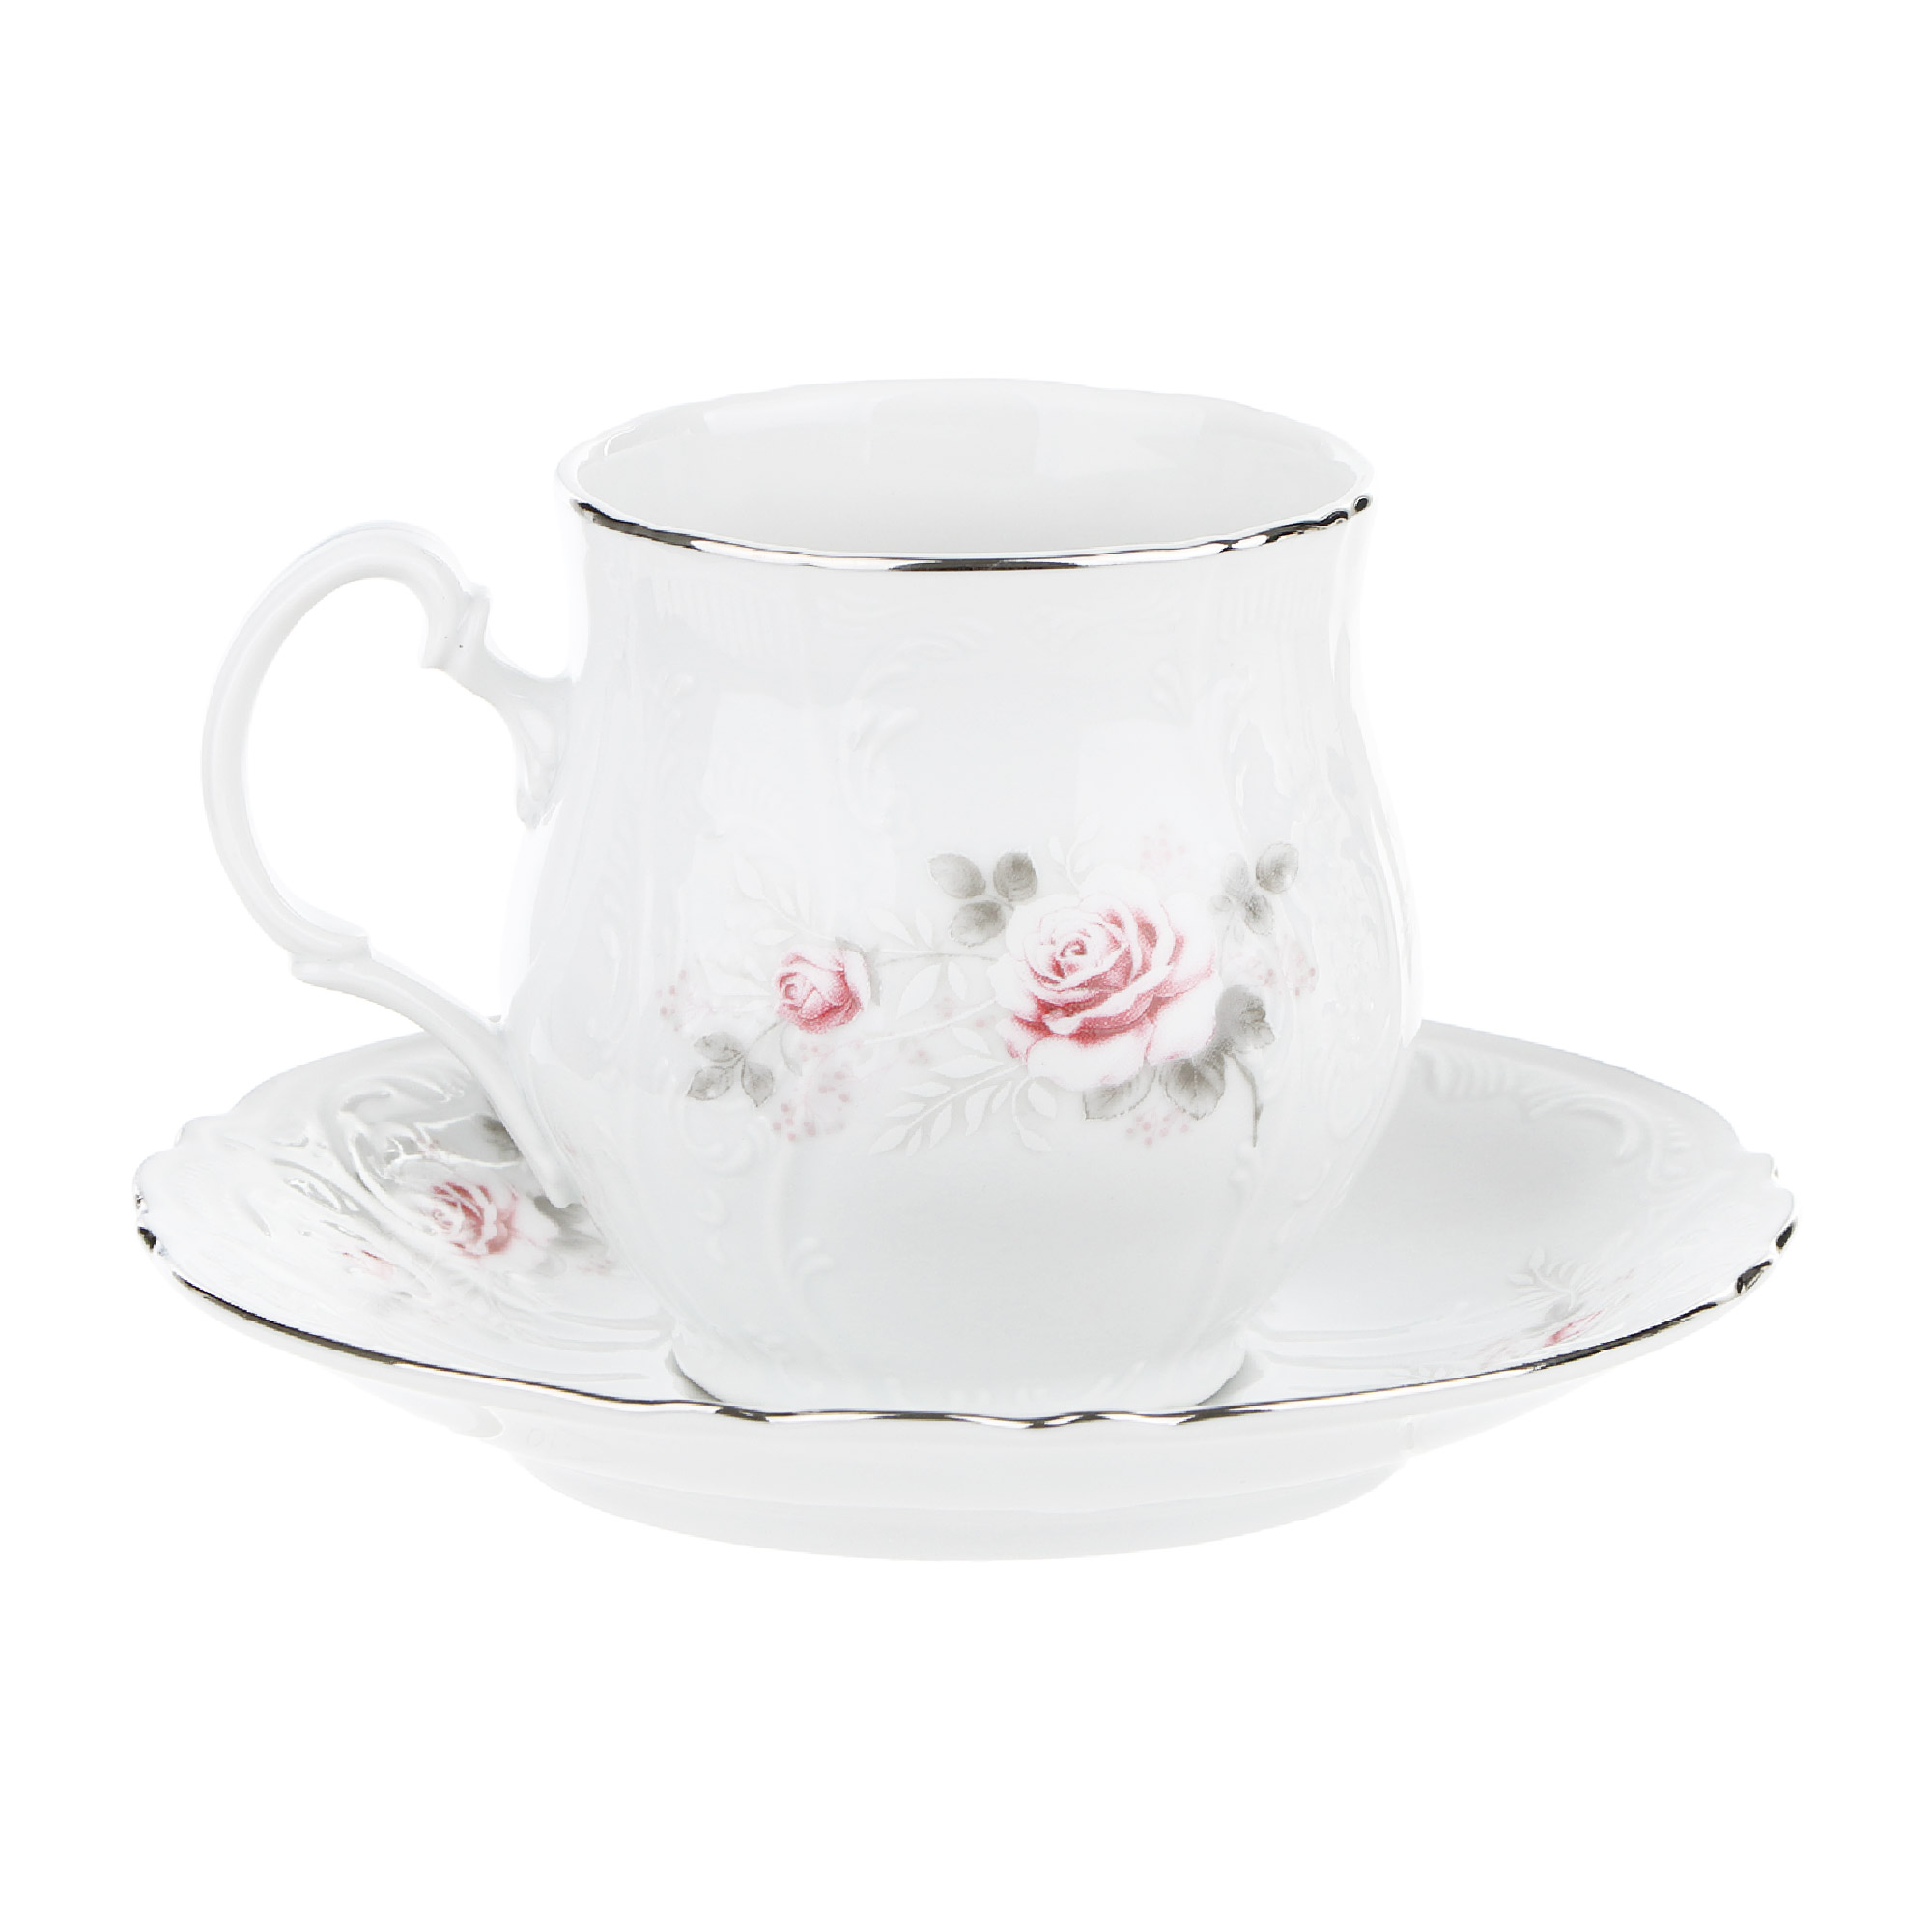 Чашка для чая 250 мл с блюдцем; декор Бледные розы, отводка платина Thun1794 чашка для бульона с блюдцем 170 мм thun1794 декор отводка золото